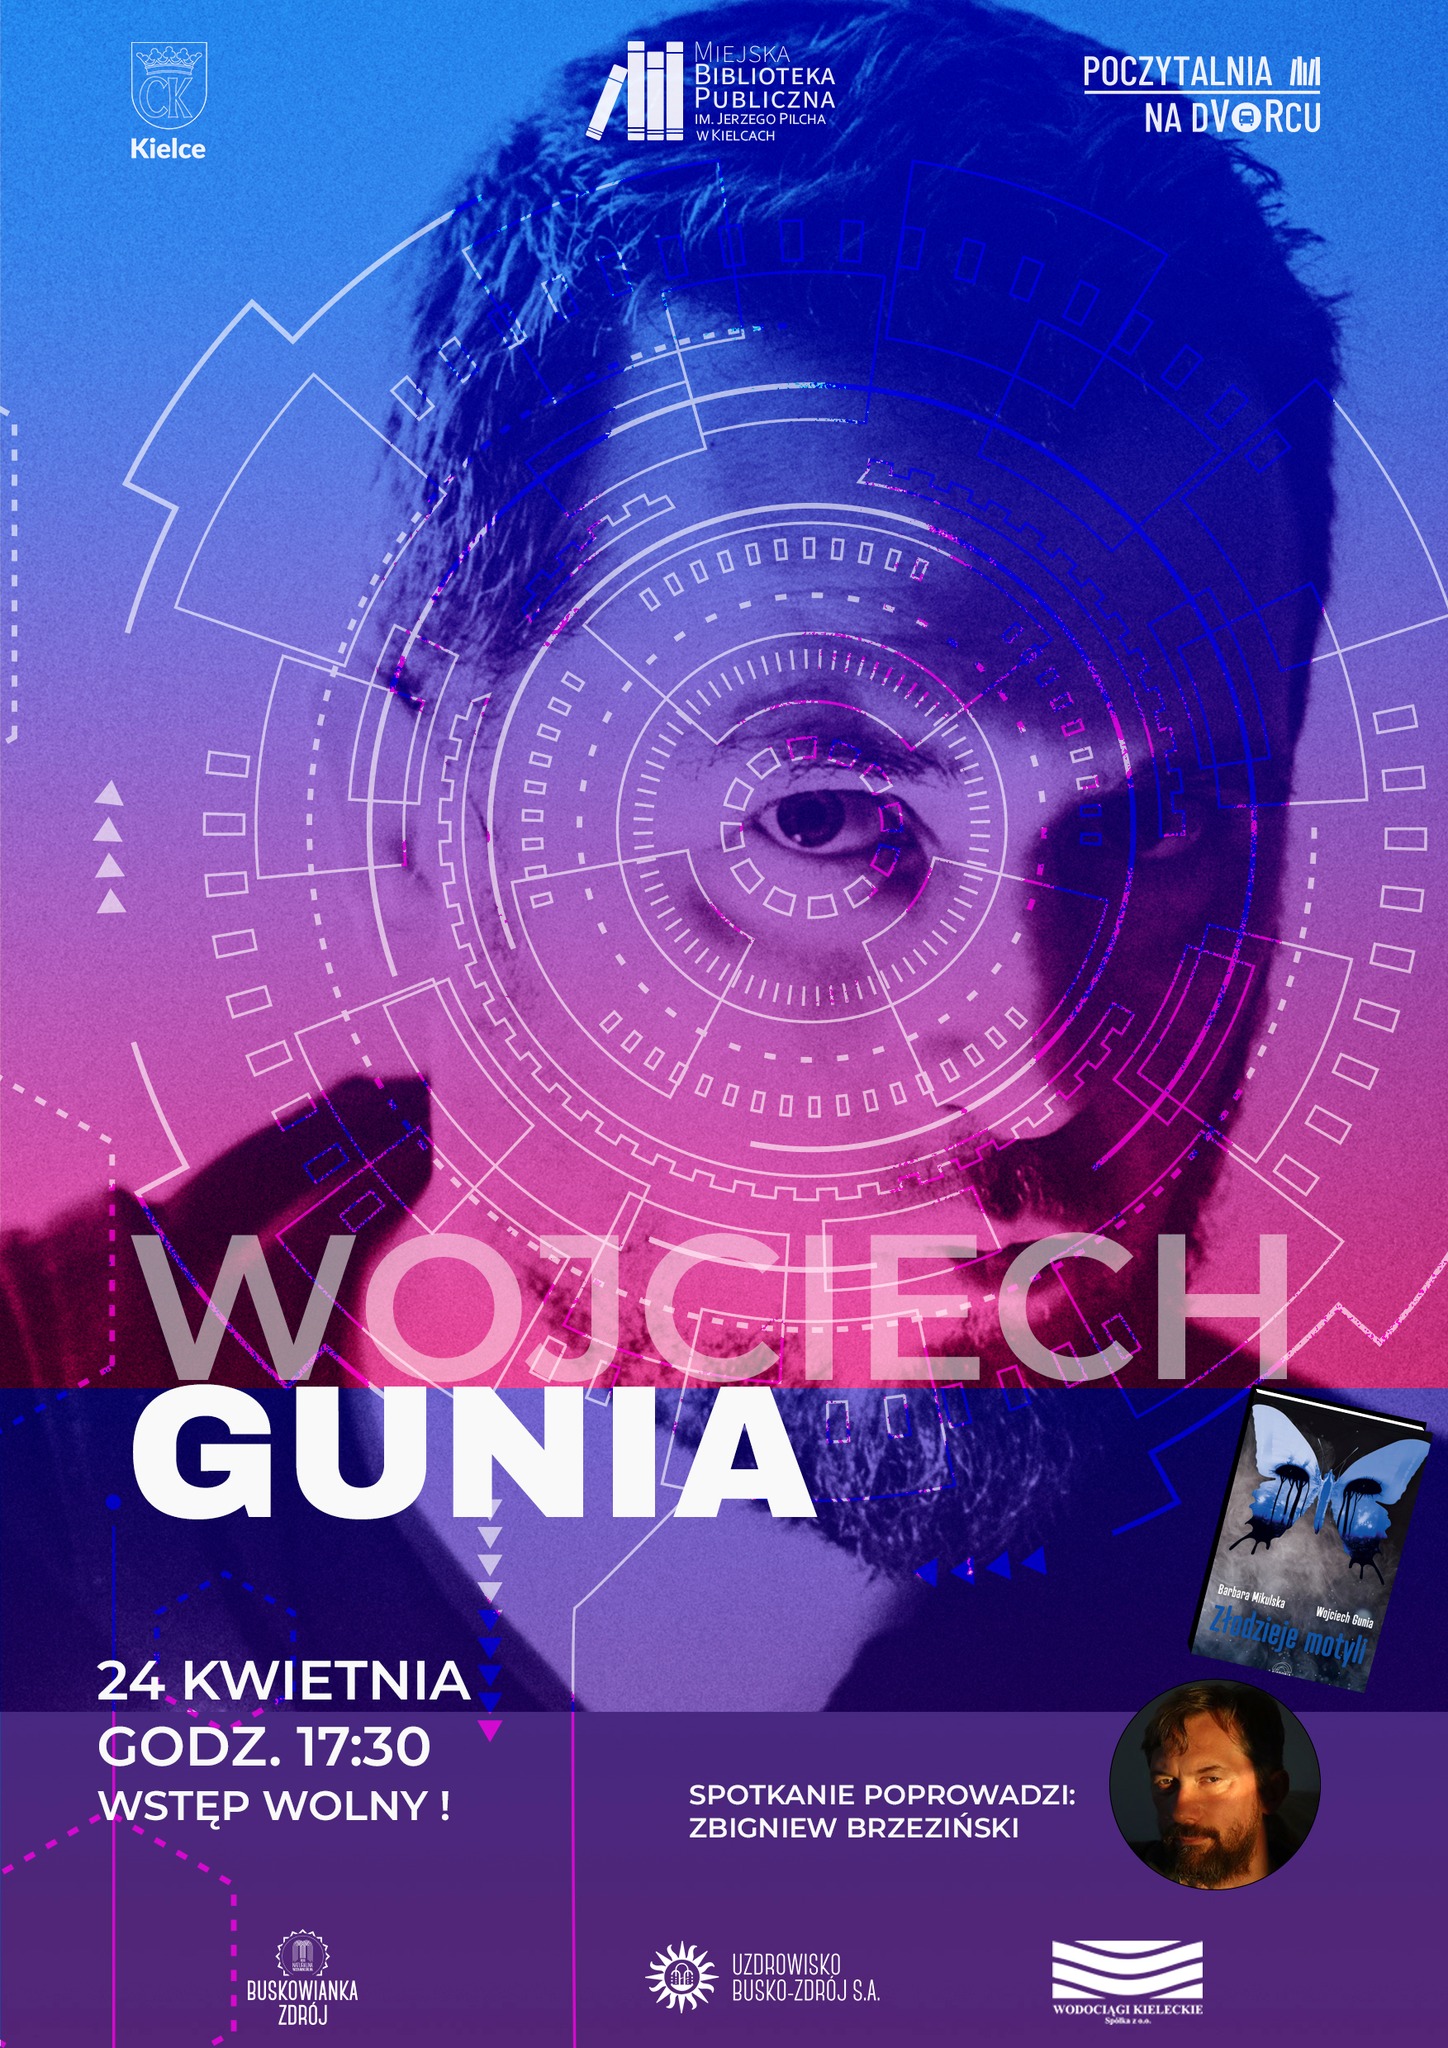 Spotkanie autorskie z Wojciechem Gunią - Radio Kielce